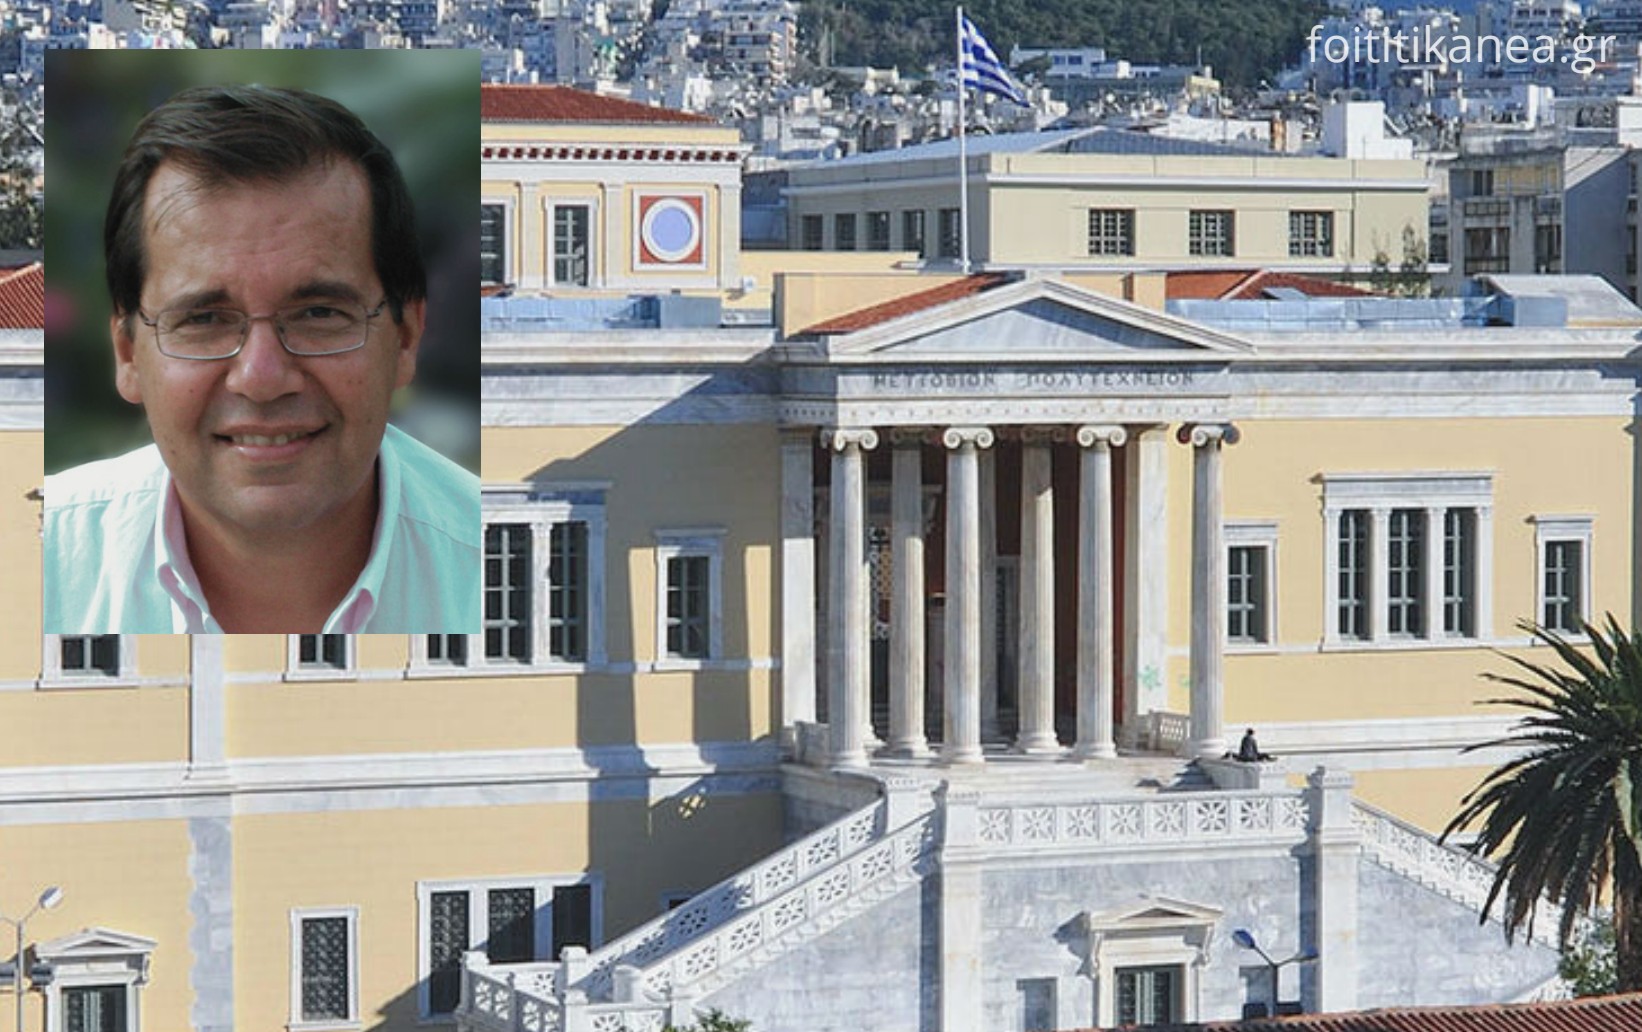  Πρύτανης ΕΜΠ: Το Ελληνικό Πανεπιστήμιο στην εποχή των Εκθετικών Τεχνολογικών Αλλαγών